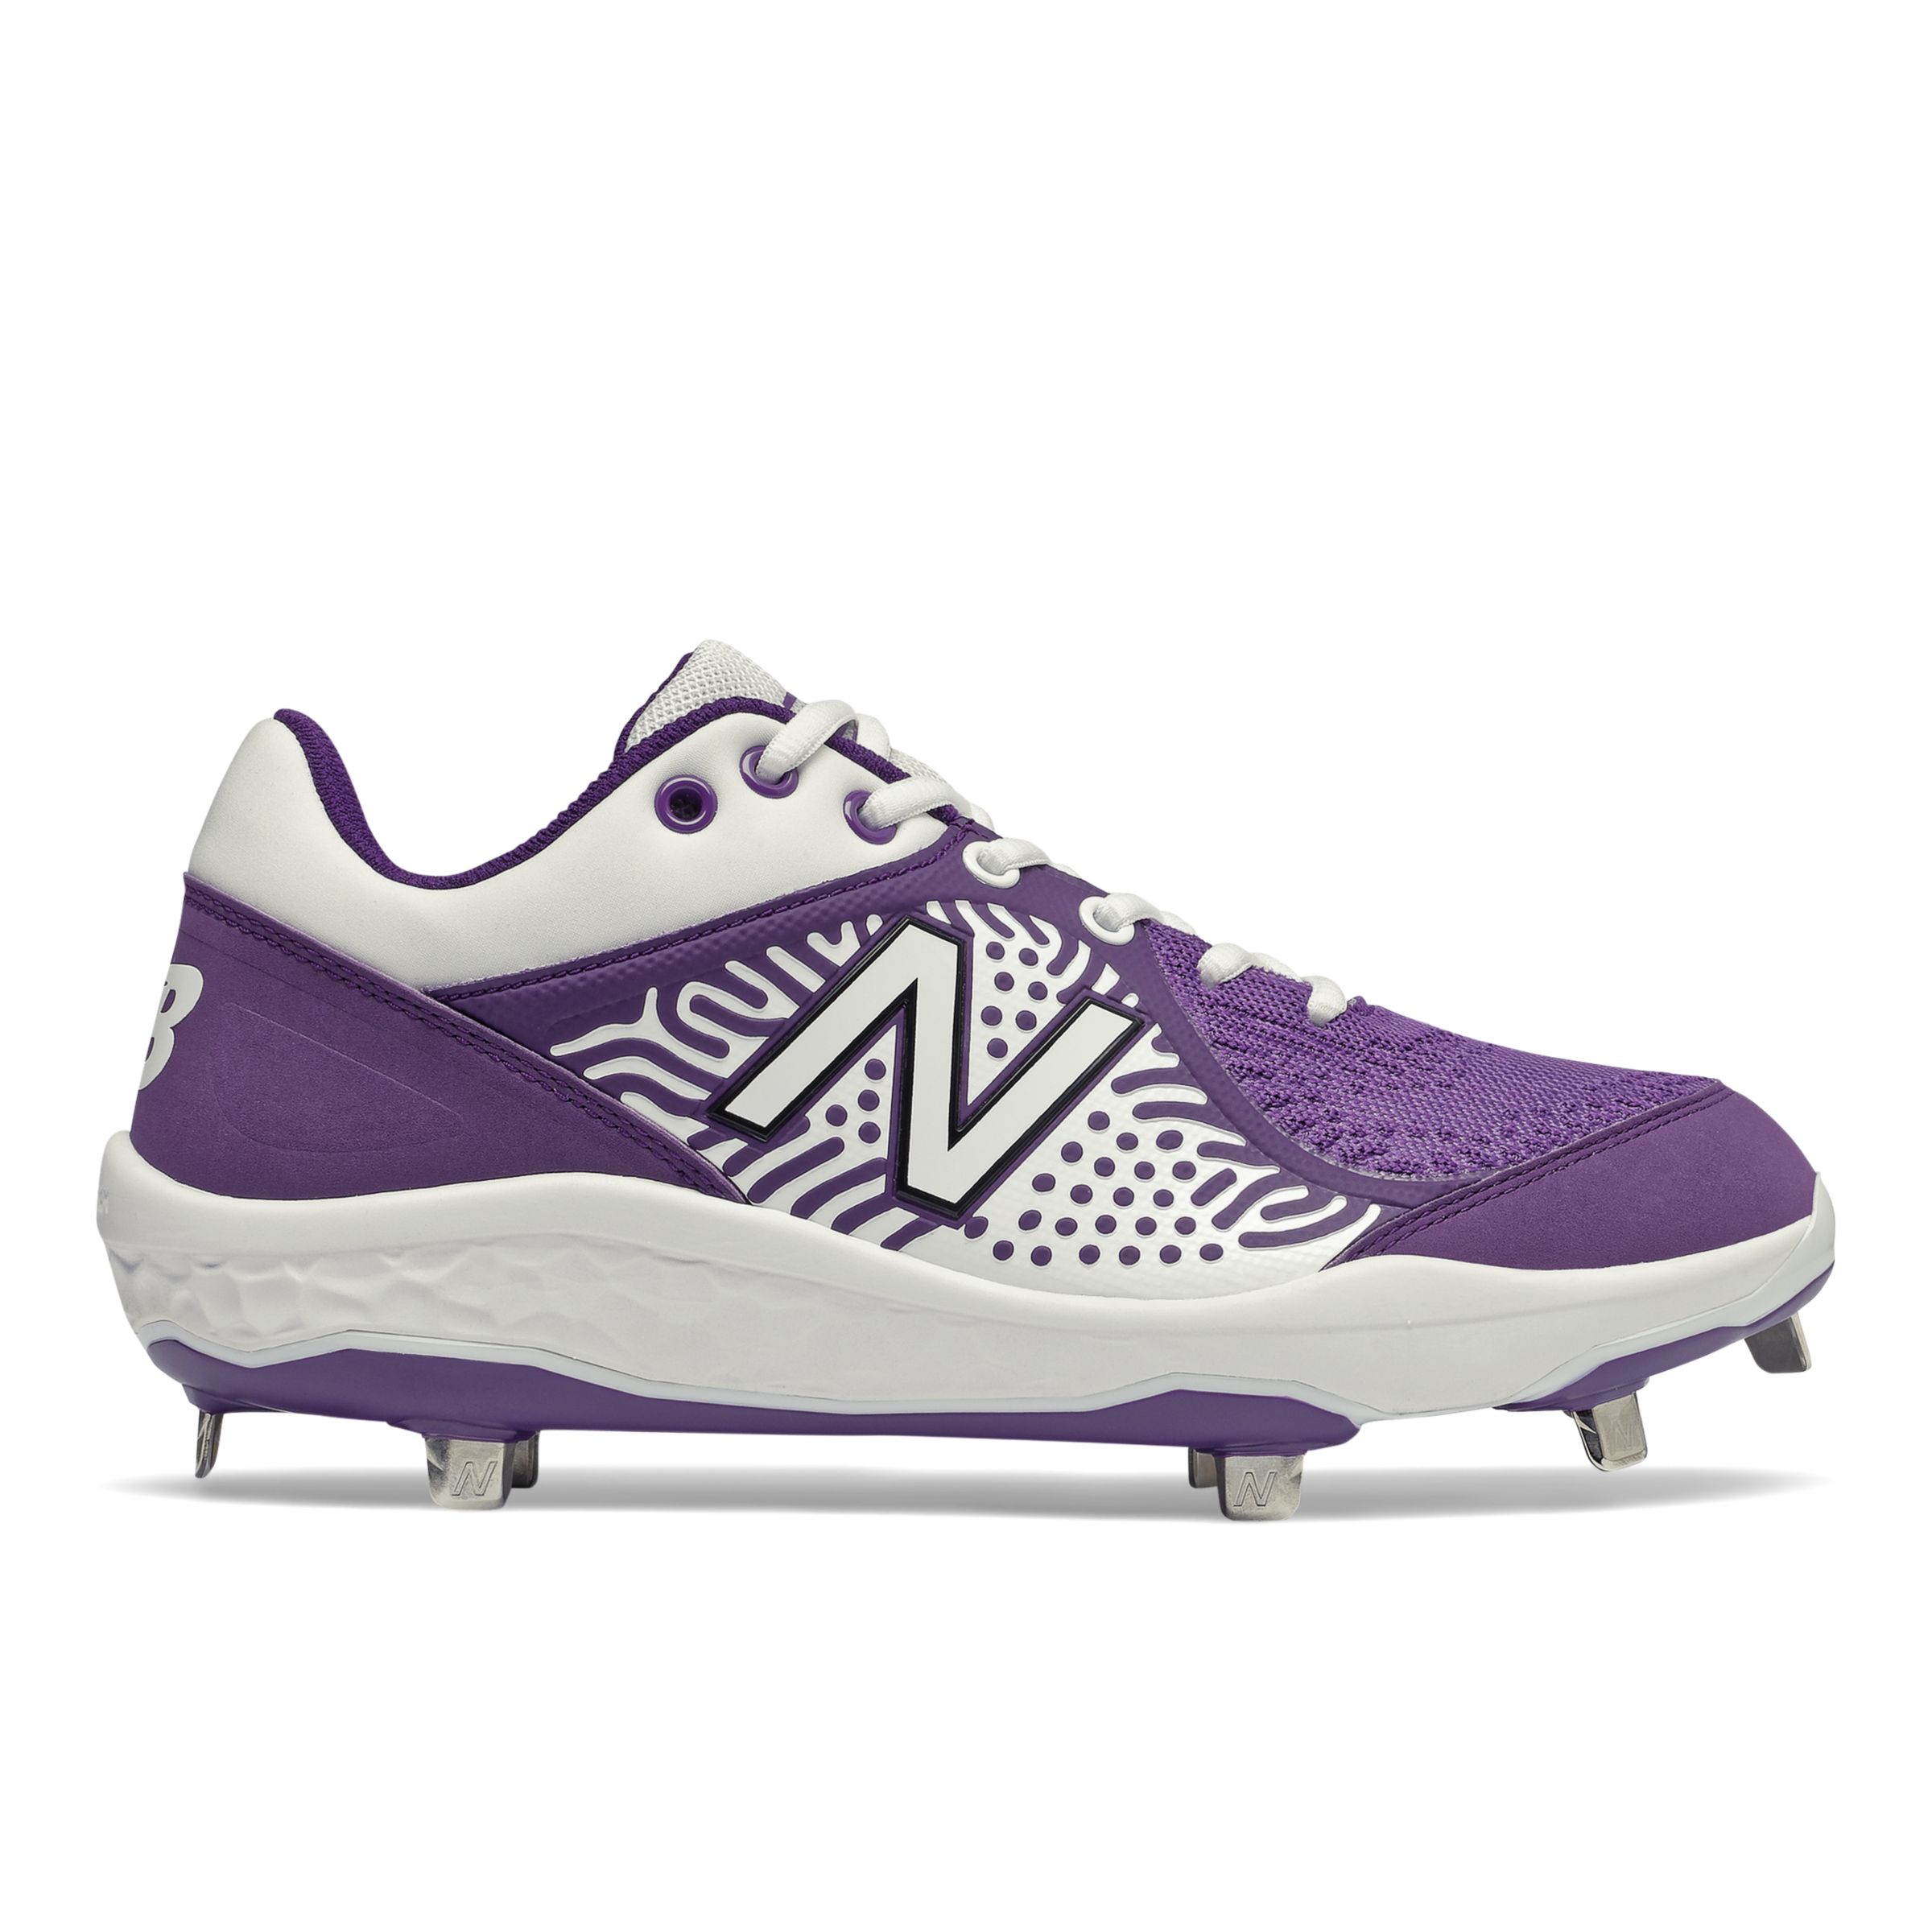 purple new balance baseball cleats